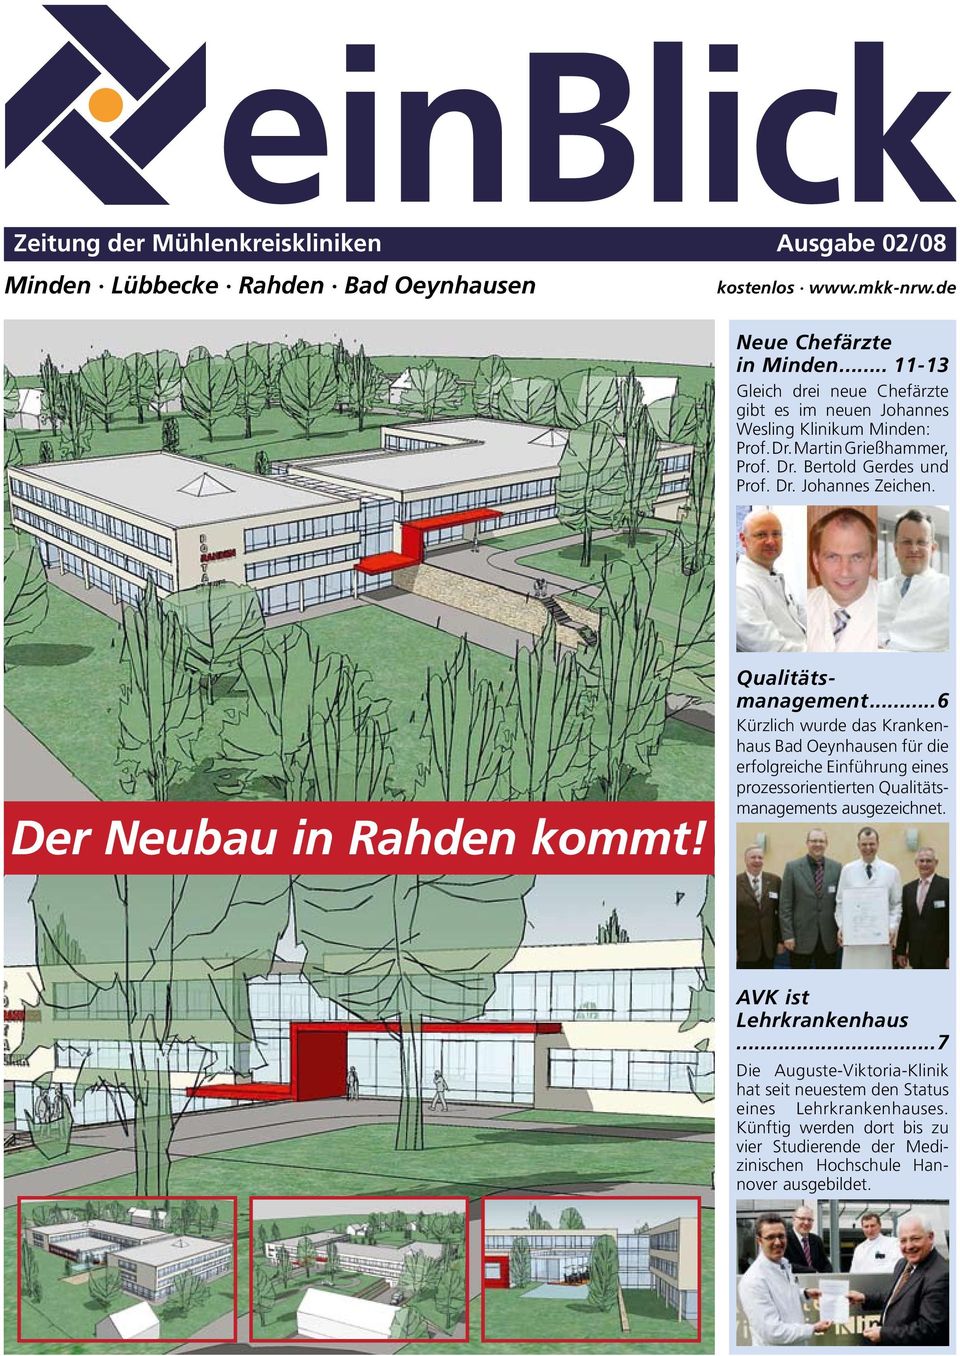 Der Neubau in Rahden kommt! Qualitätsmanagement.